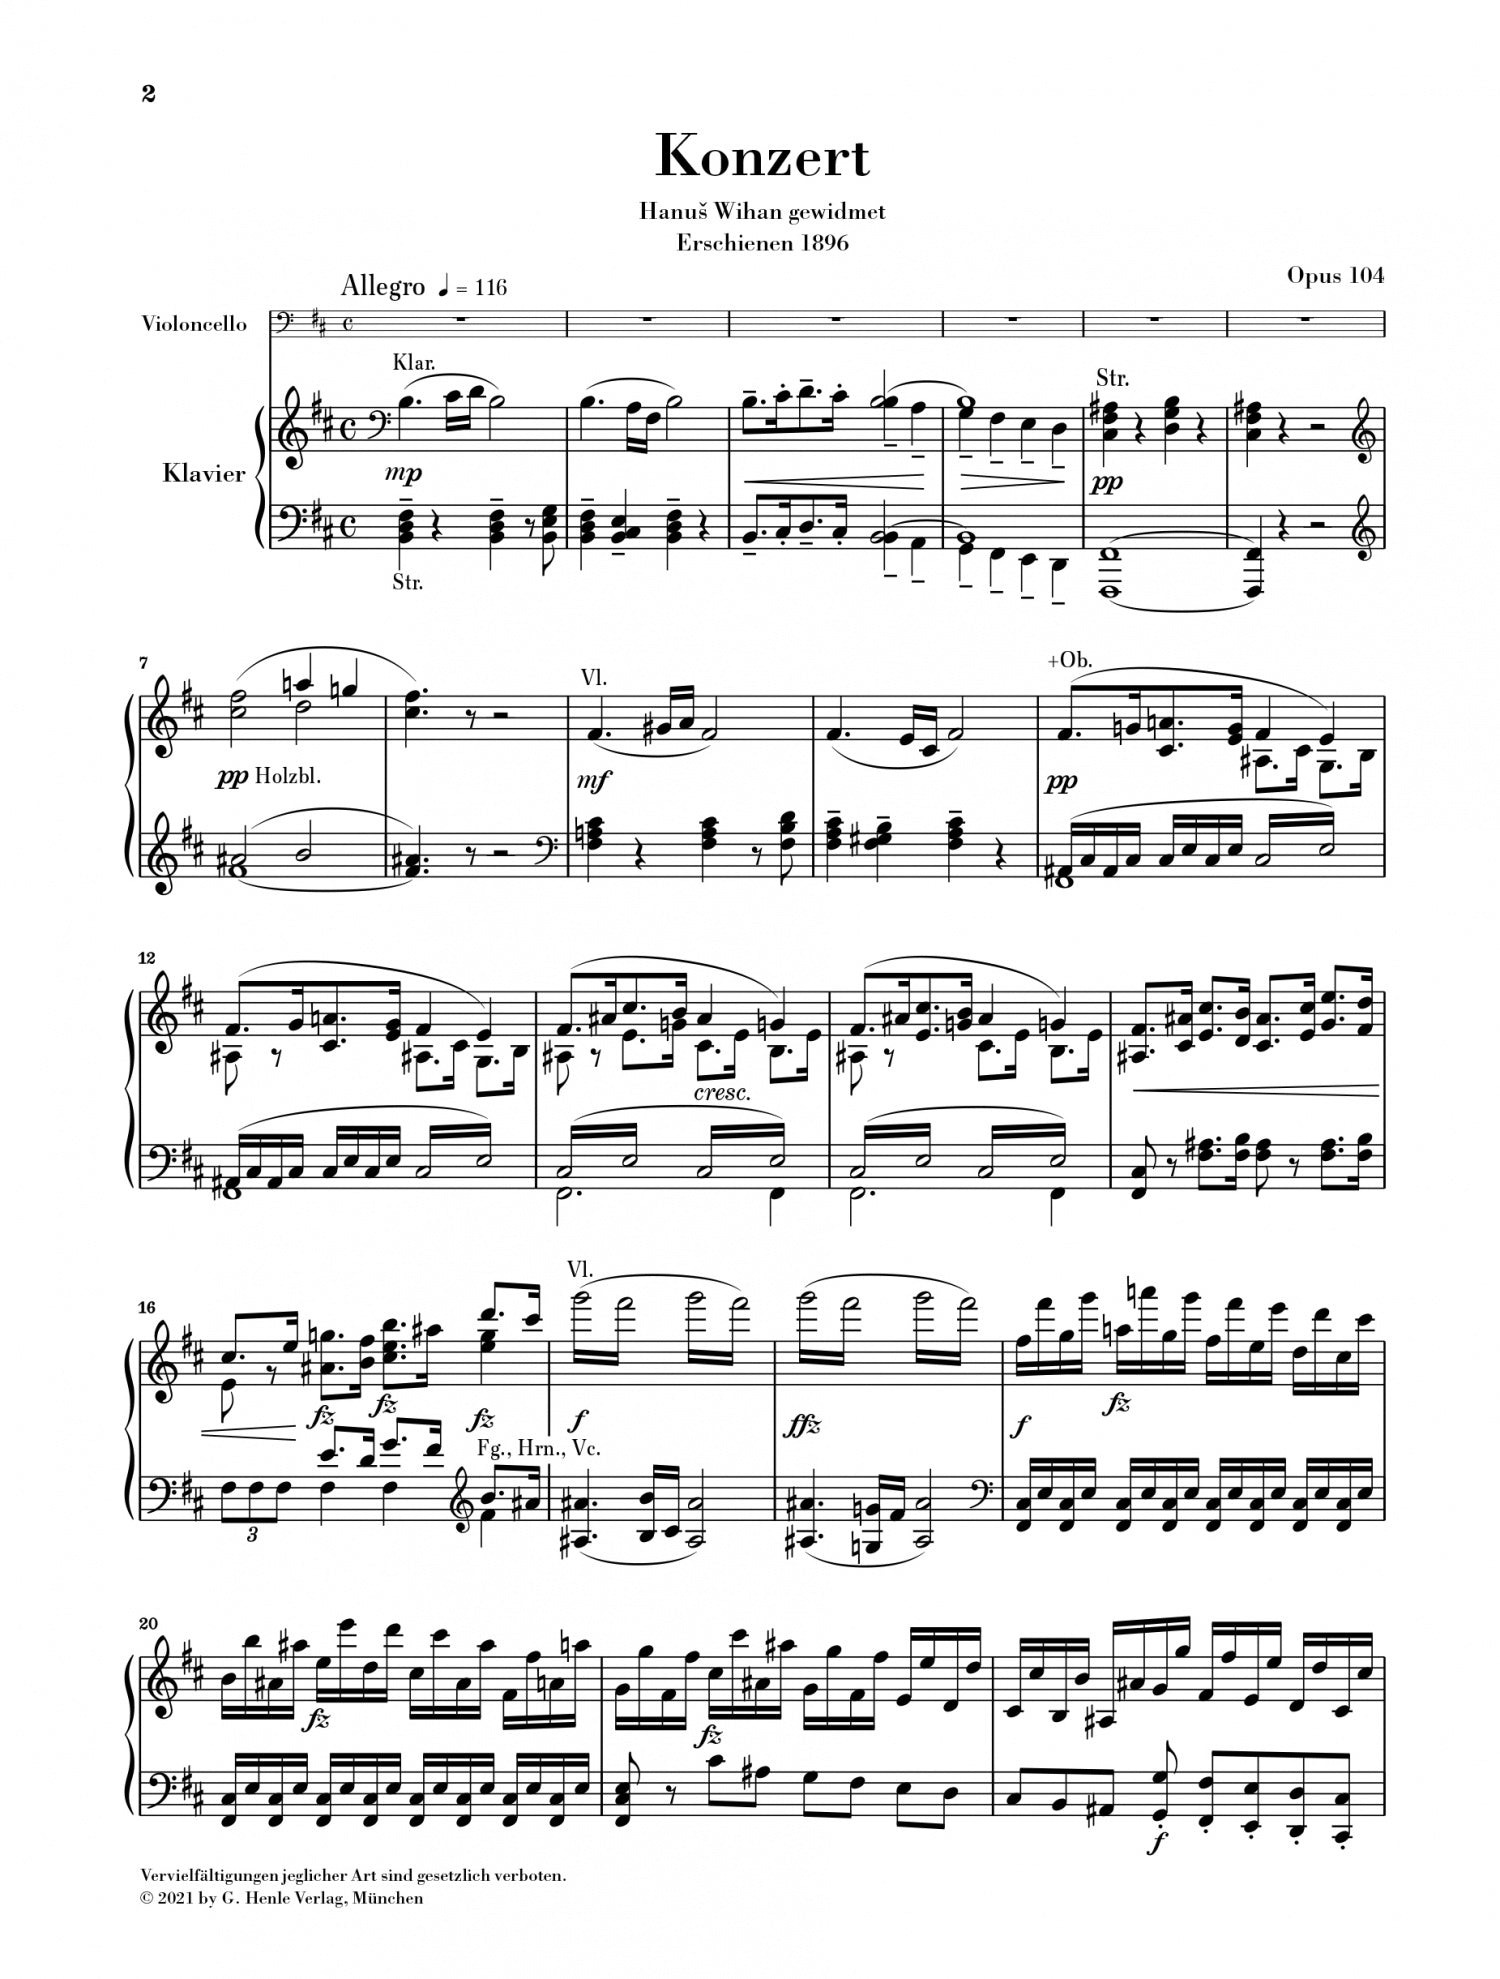 Dvorak: Violoncello Concerto b minor op. 104